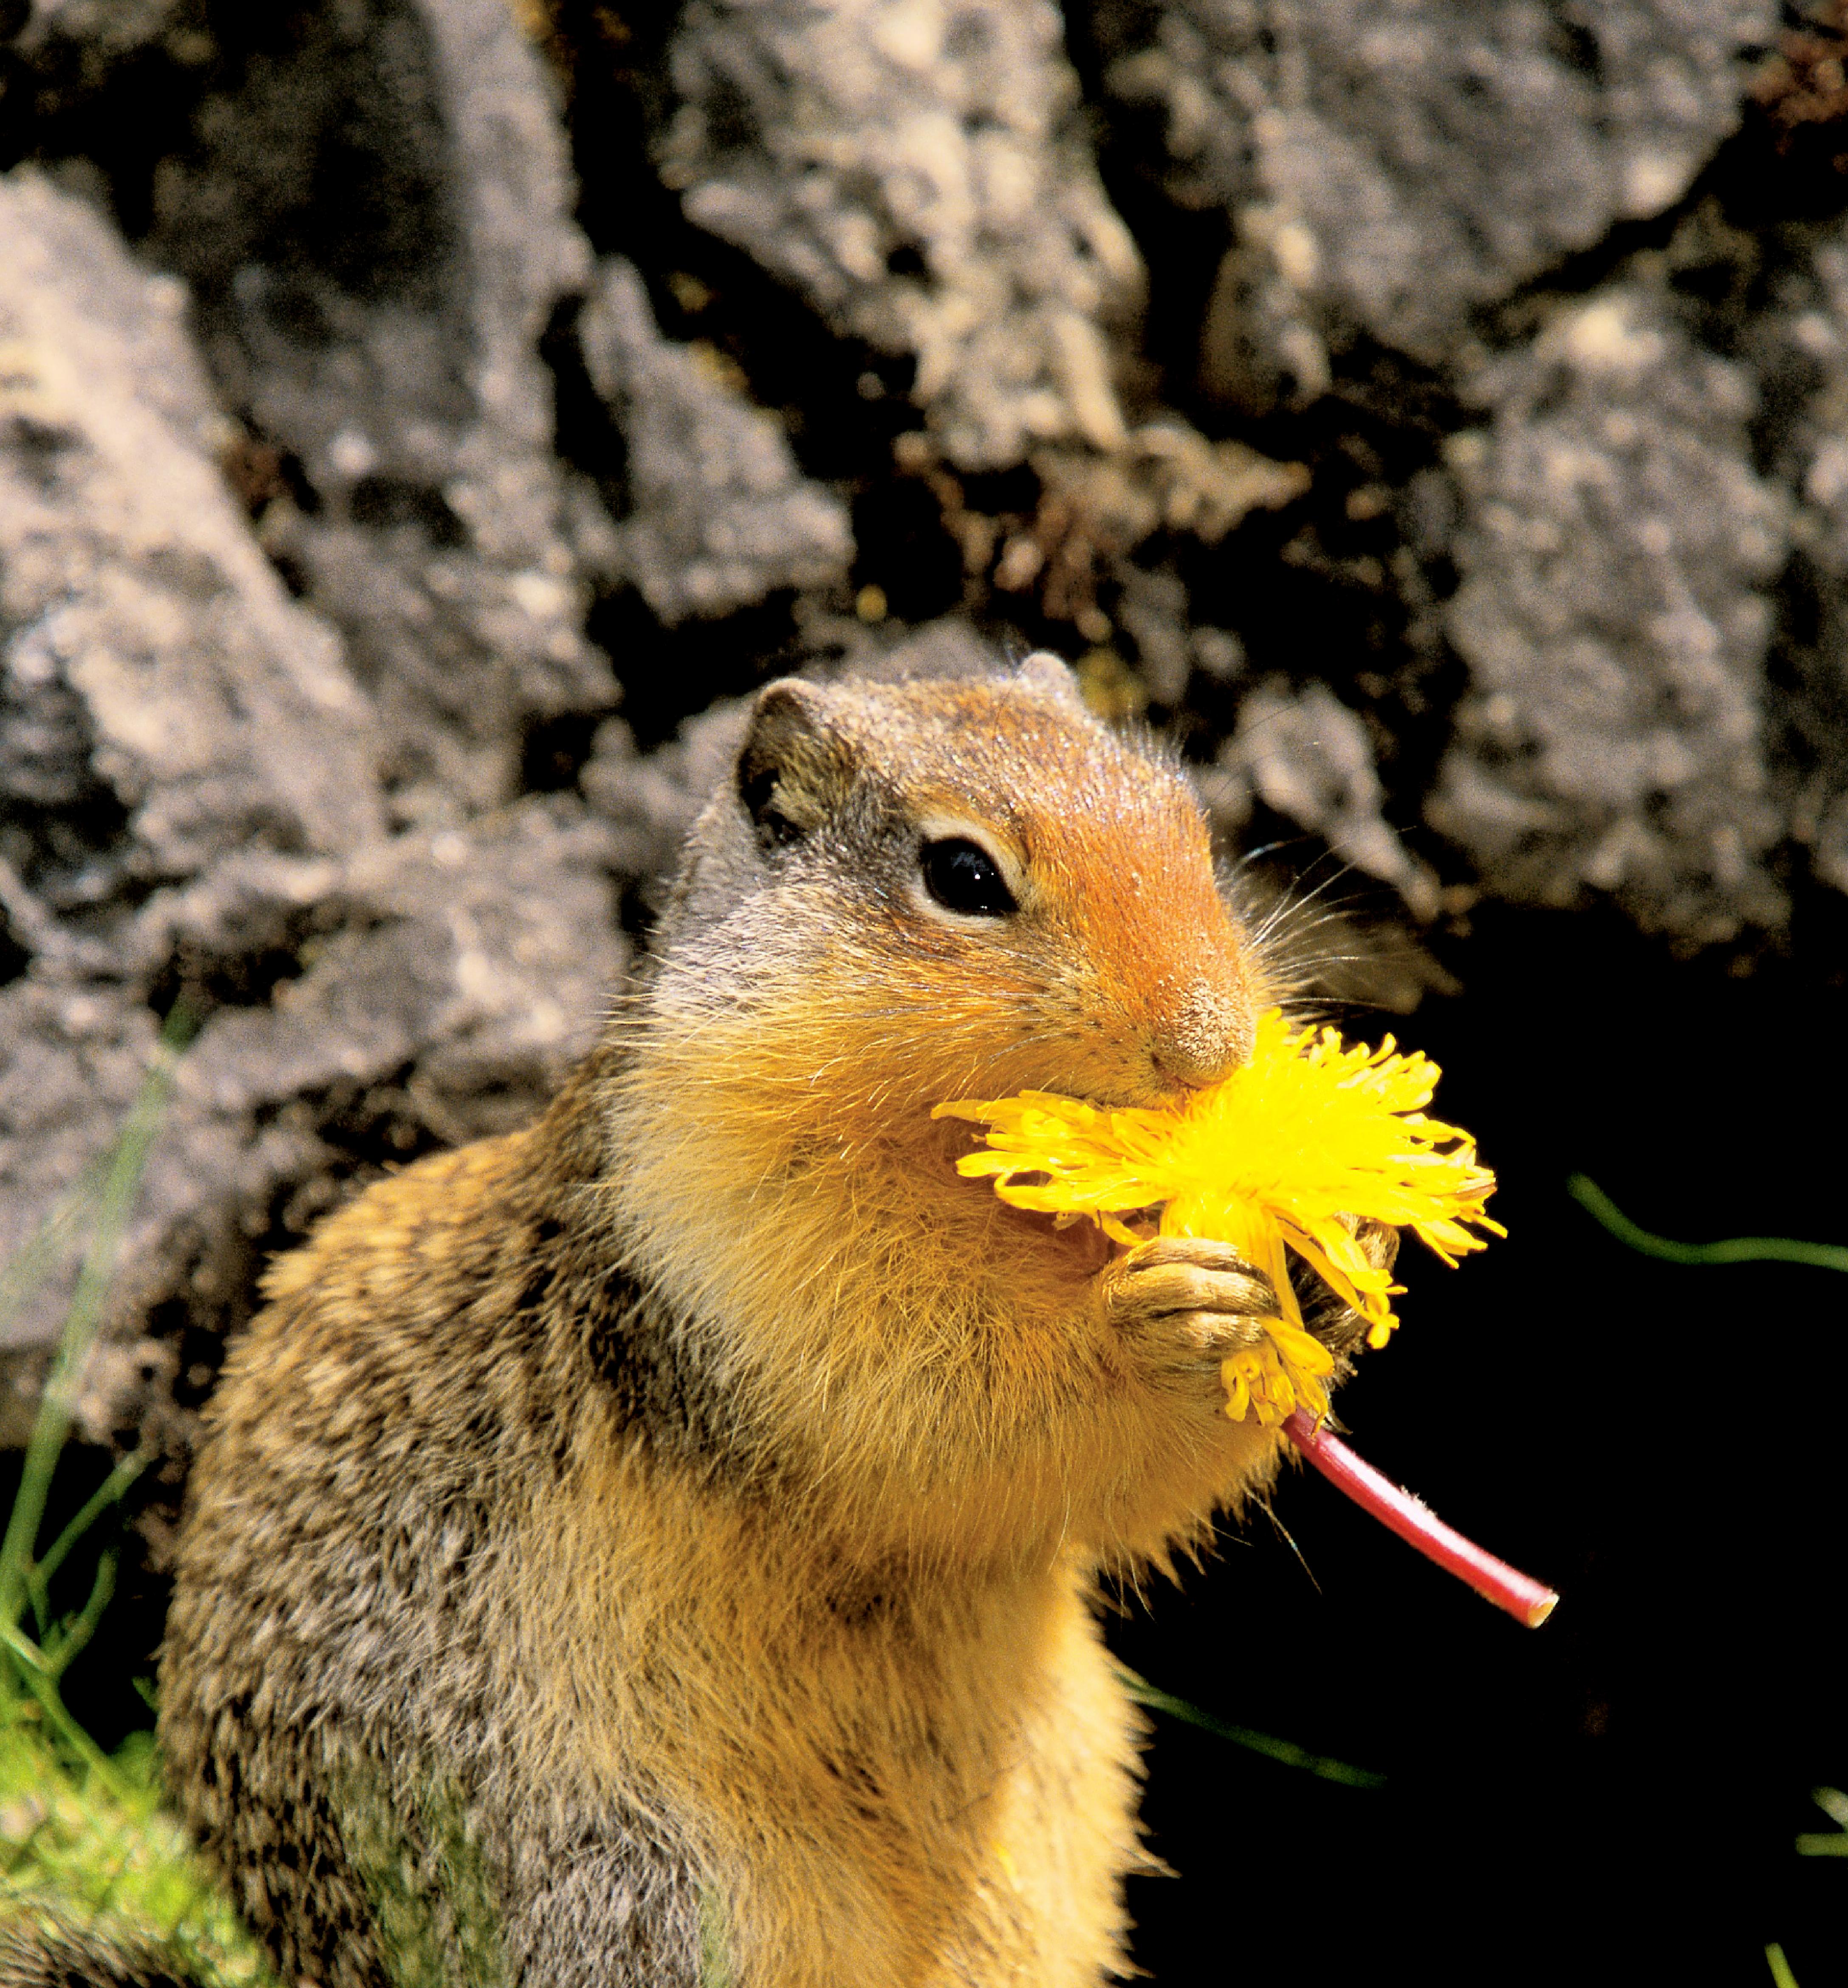 Squirrel eating: Adam Jones/Photo Researchers, Inc.